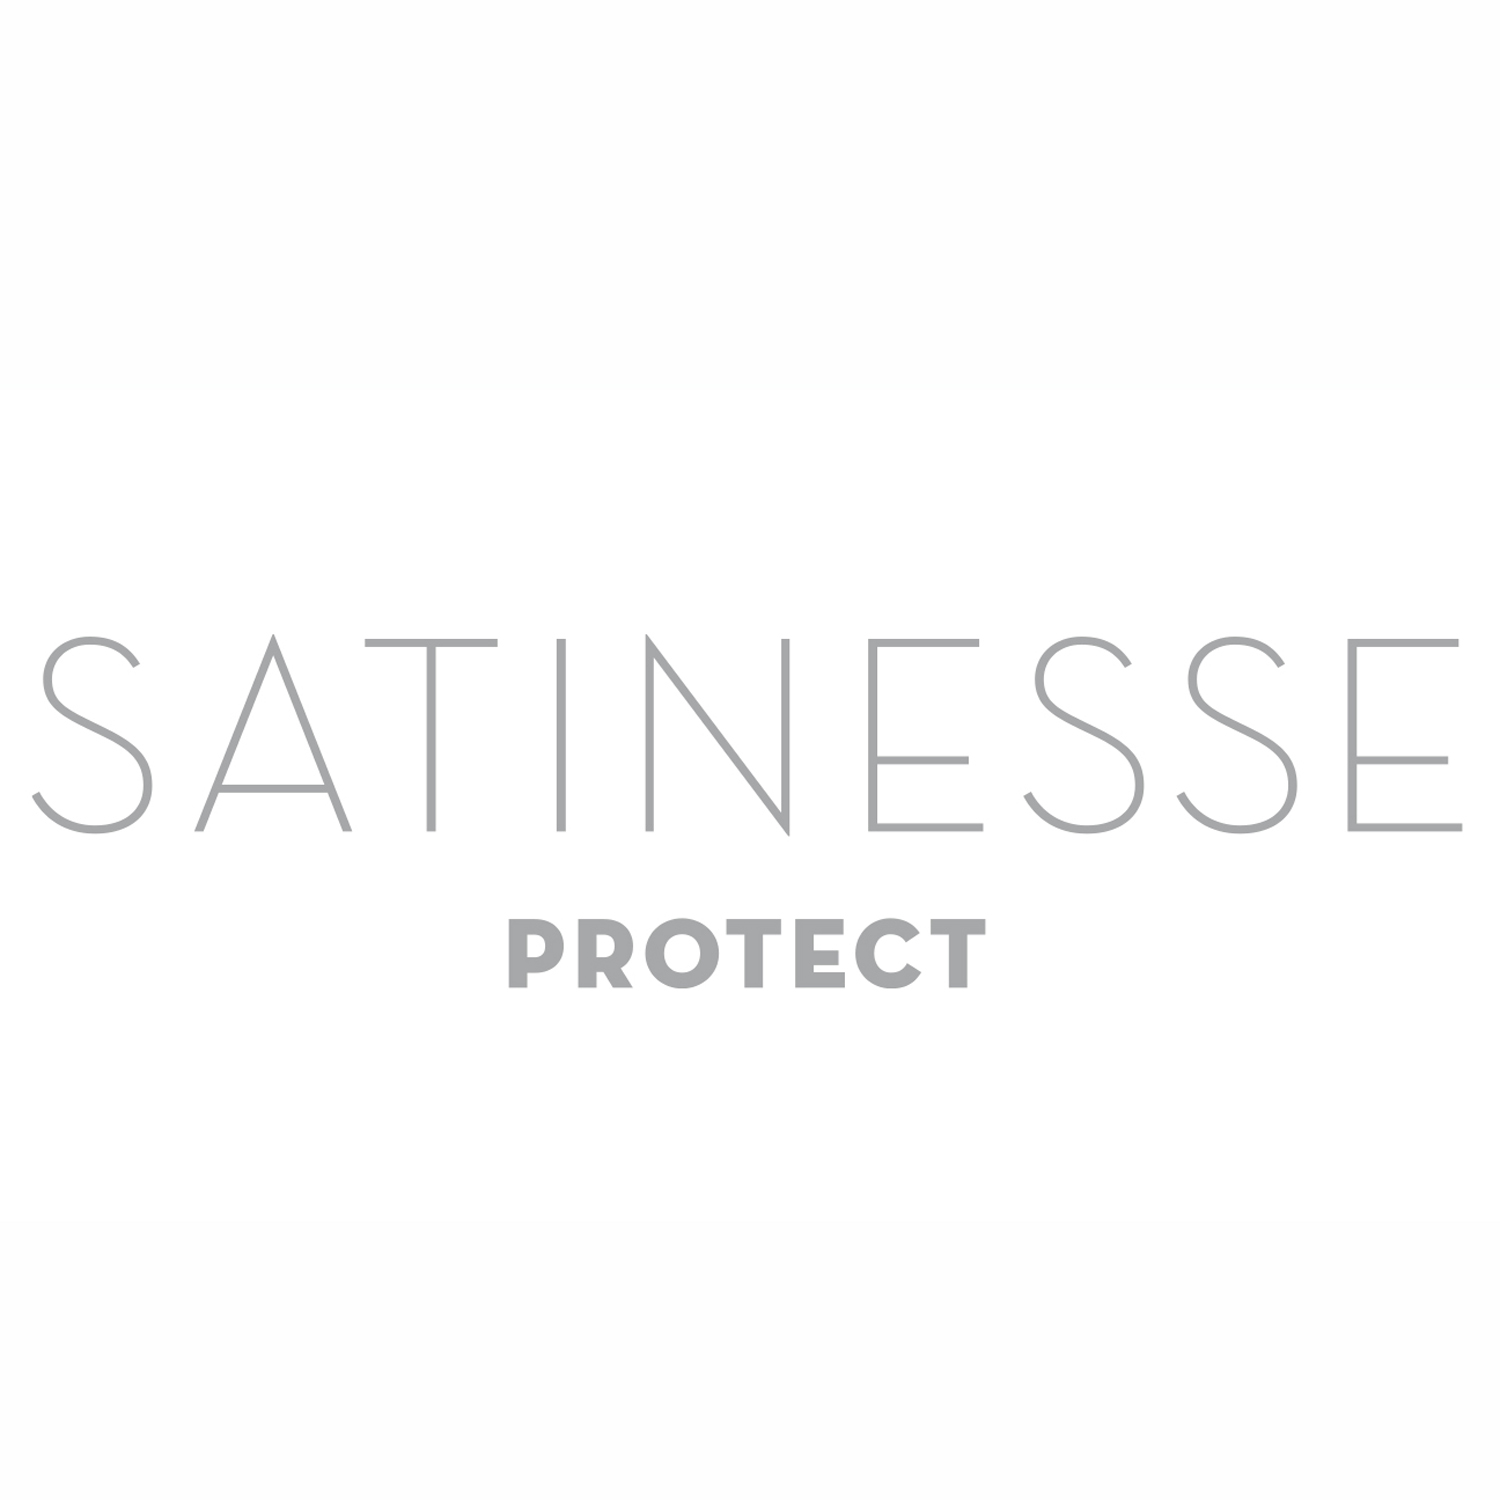 FORMESSE Matratzenschoner Satinesse Protect weiß 200x220cm